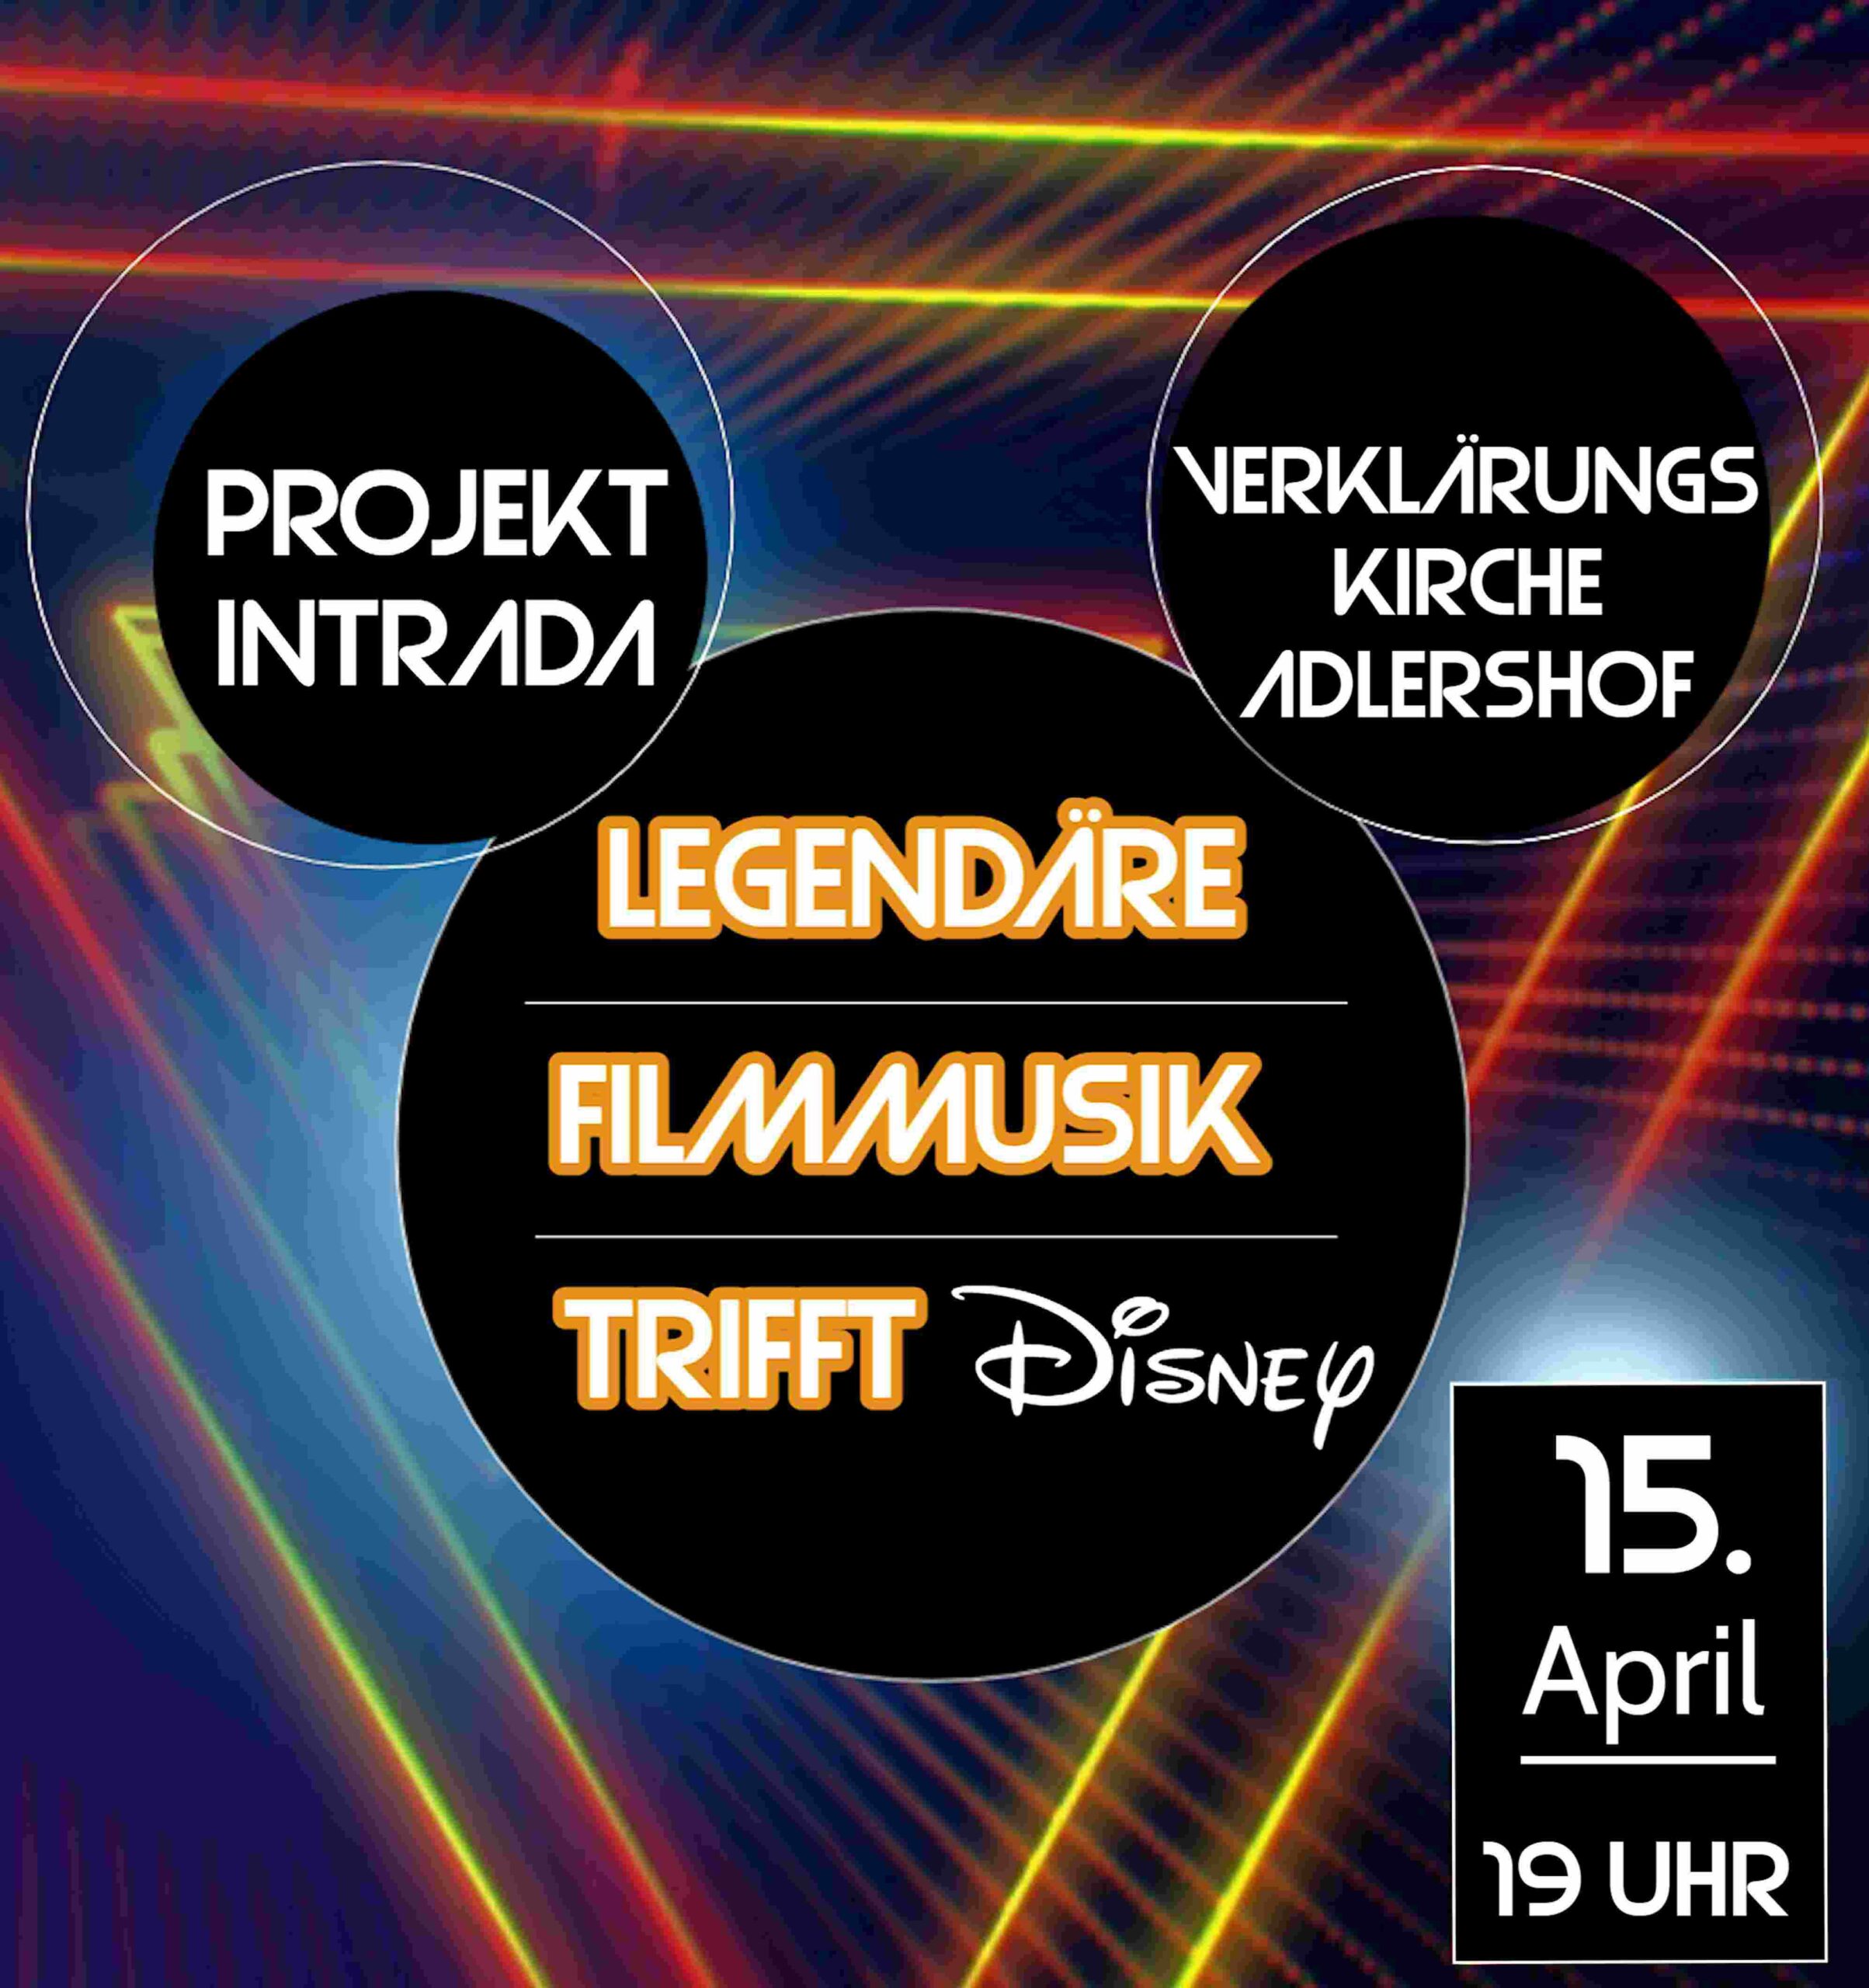 Veranstaltungsplakat des Projekts Intrade. Titel der Veranstaltung ist – Legendäre Filmmusik trifft Disney Das Konzert findet am 15. April 2023 um 19 Uhr in der Verklärungskirche Berlin-Adlershof statt.